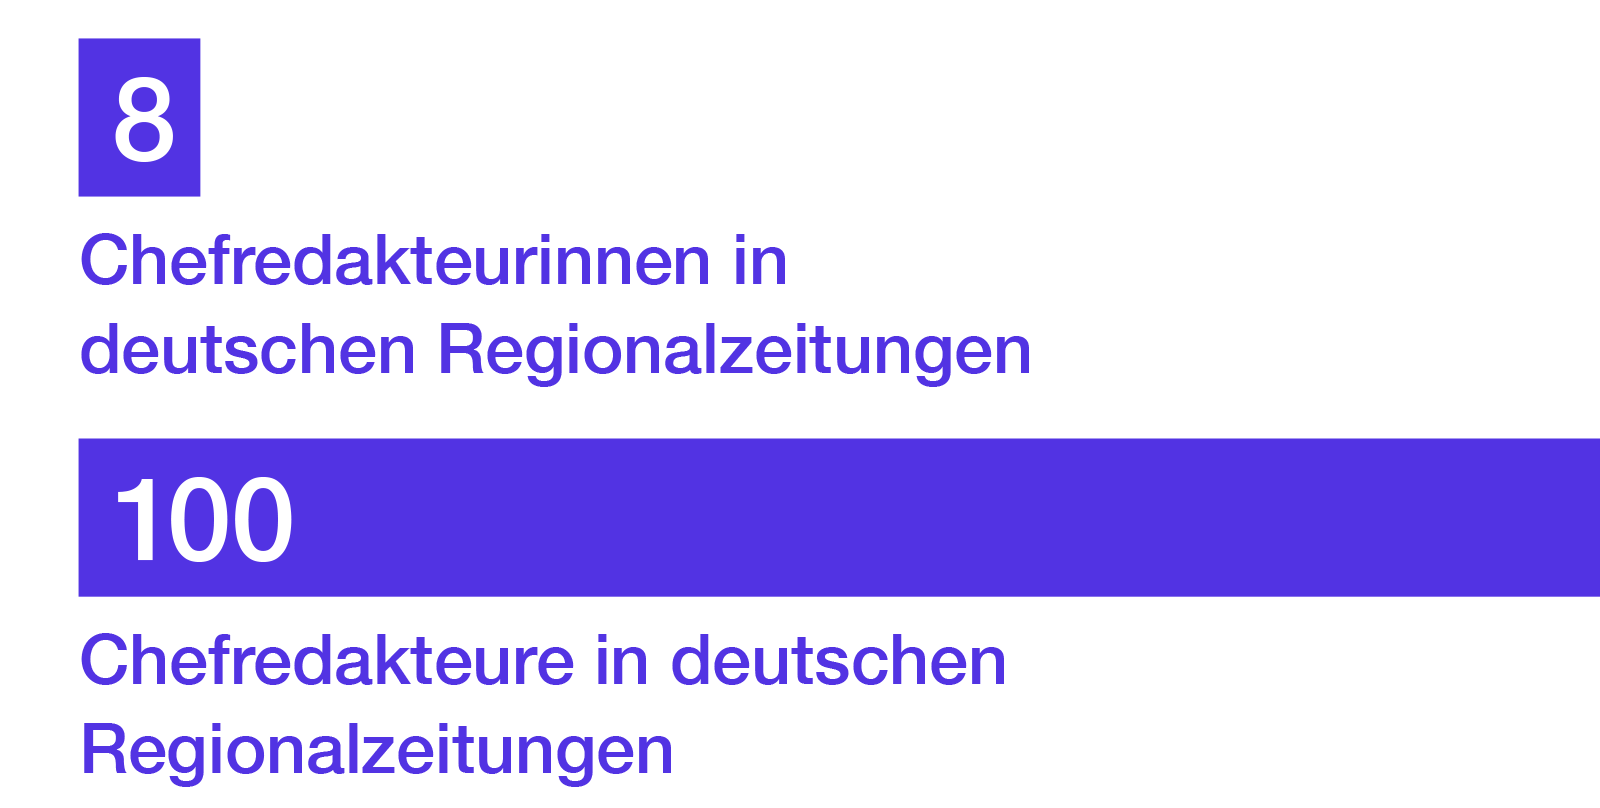 8 Chefredakteurinnen in deutschen Regionalzeitungen. 100 Chefredakteure in deutschen Regionalzeitungen.